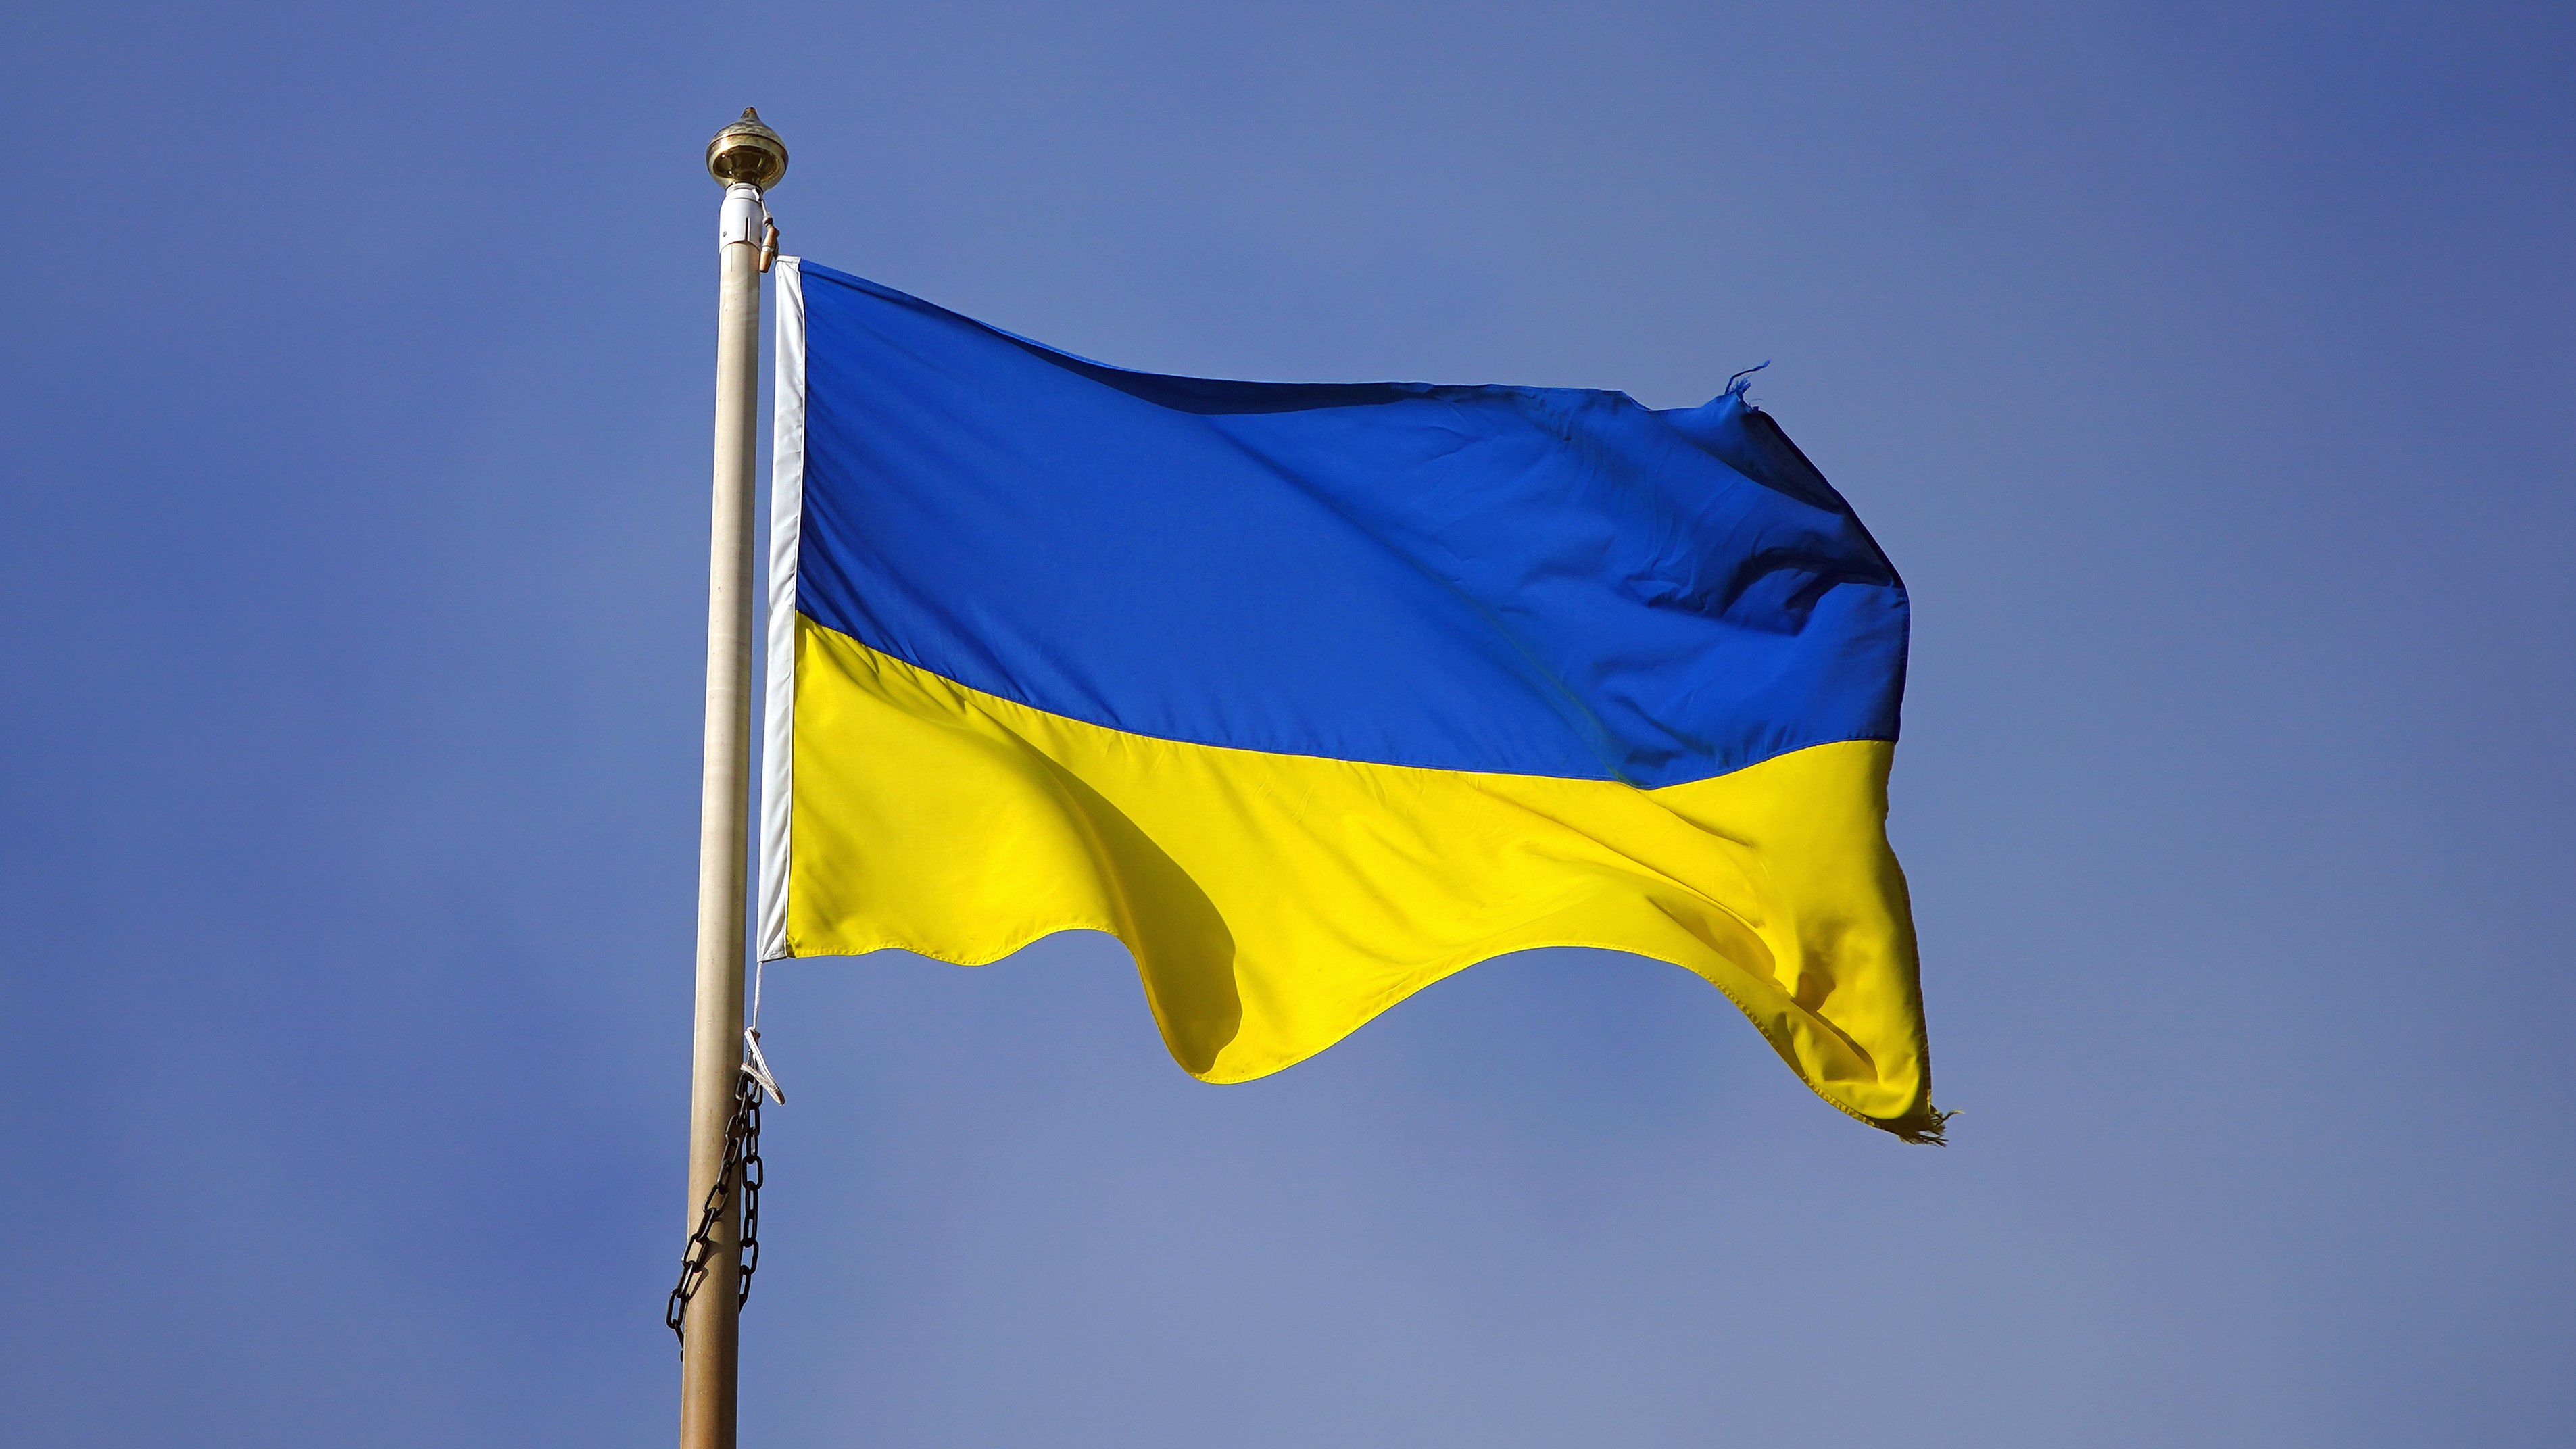 Semmi meglepő: Ukrajna sem vesz részt az idei ökölvívó-vb-n